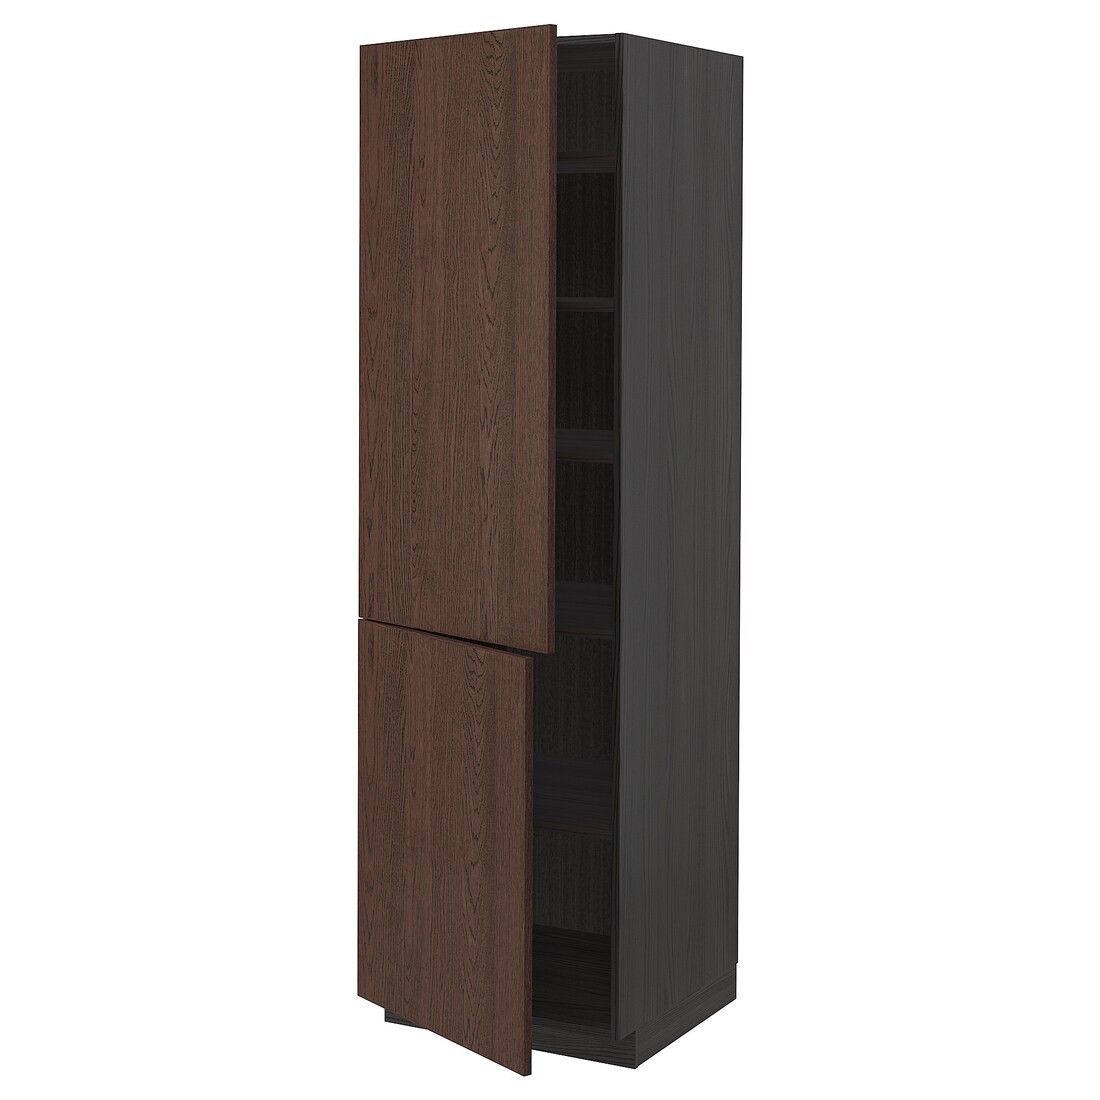 METOD МЕТОД Высокий шкаф с полками / 2 дверцы, черный / Sinarp коричневый, 60x60x200 см